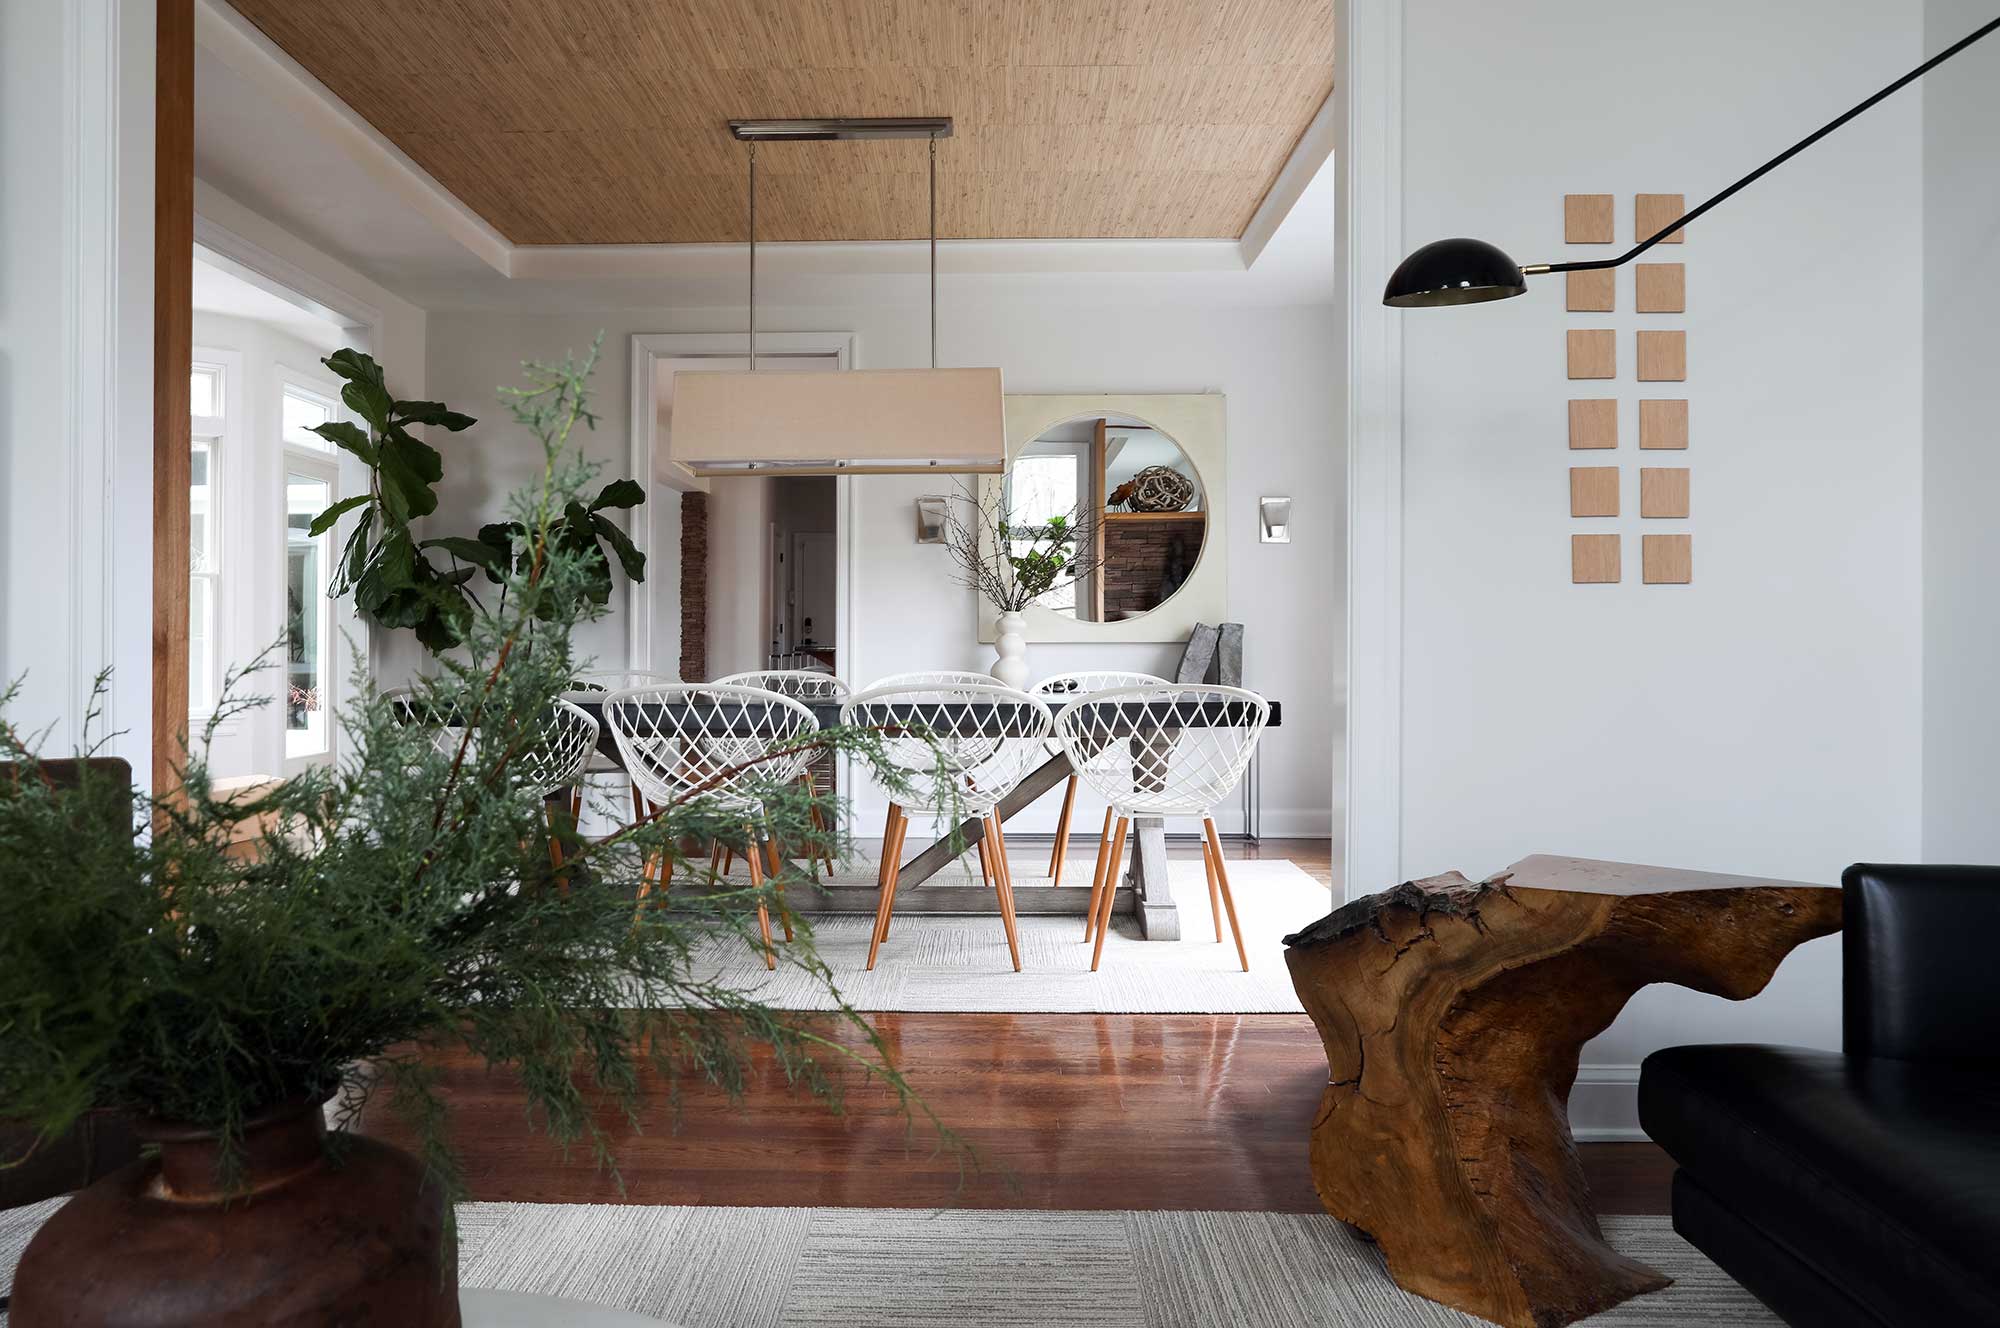 casa cancado by interior designer Patchi Cancado